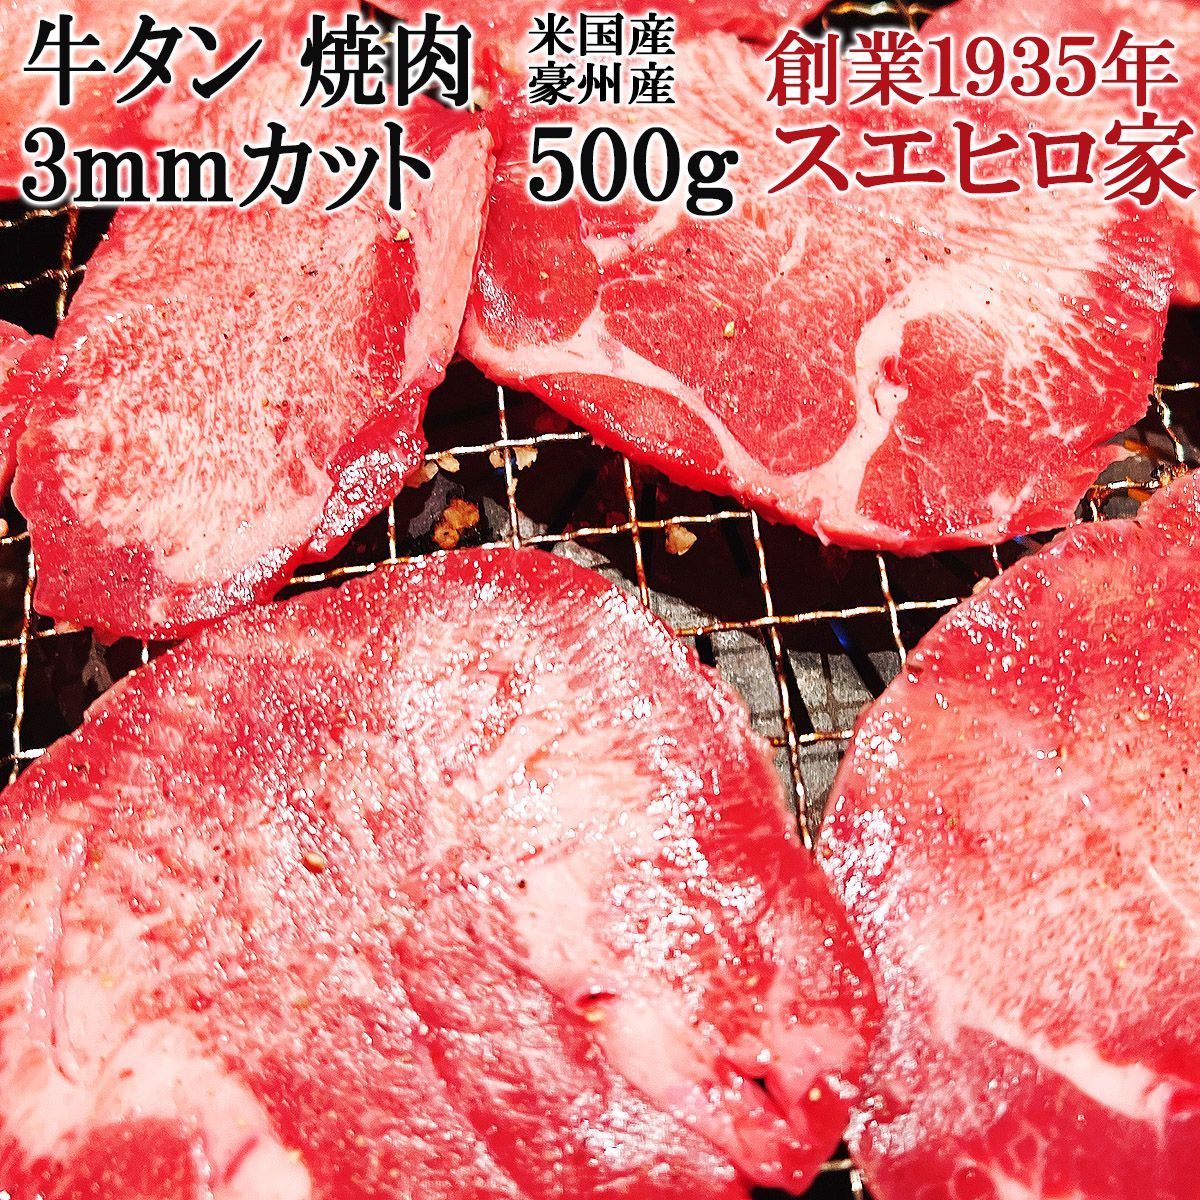 牛タン 焼肉 スライス 500g 3ミリカット 薄切り 外国産 牛たん 味付なし-0